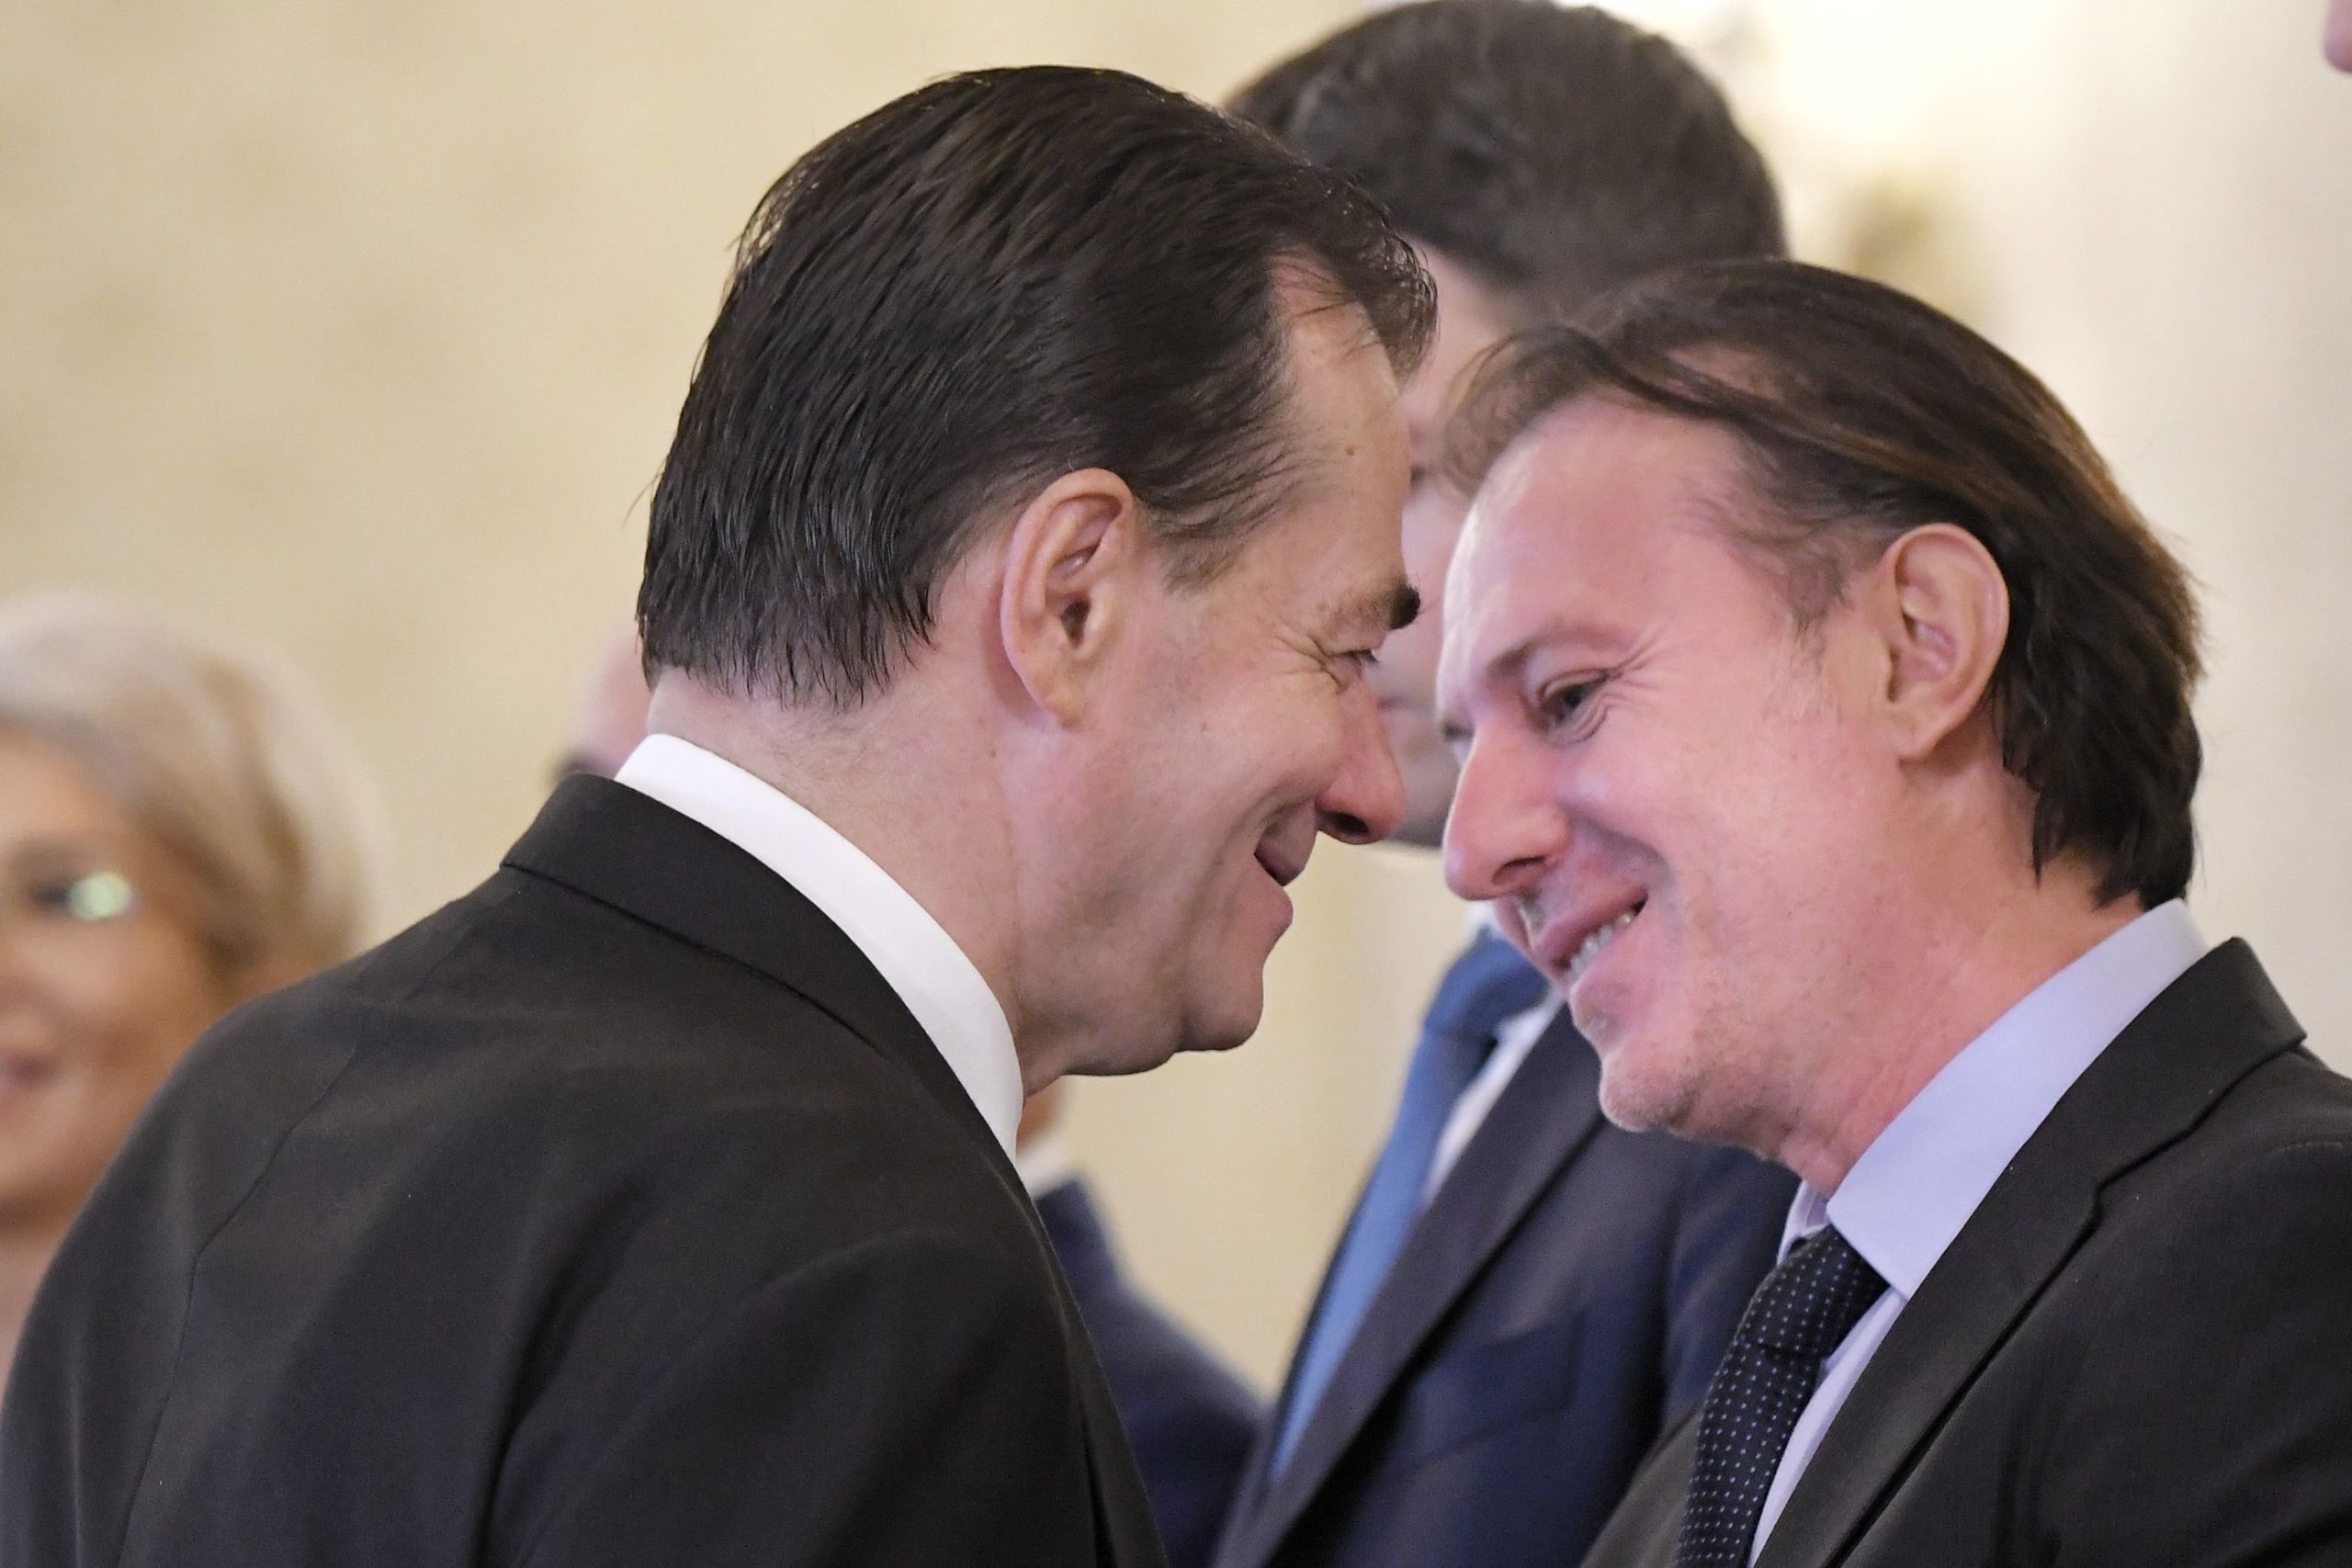  Orban: E minciună sfruntată că eu am dat informațiile despre Florin Cîțu